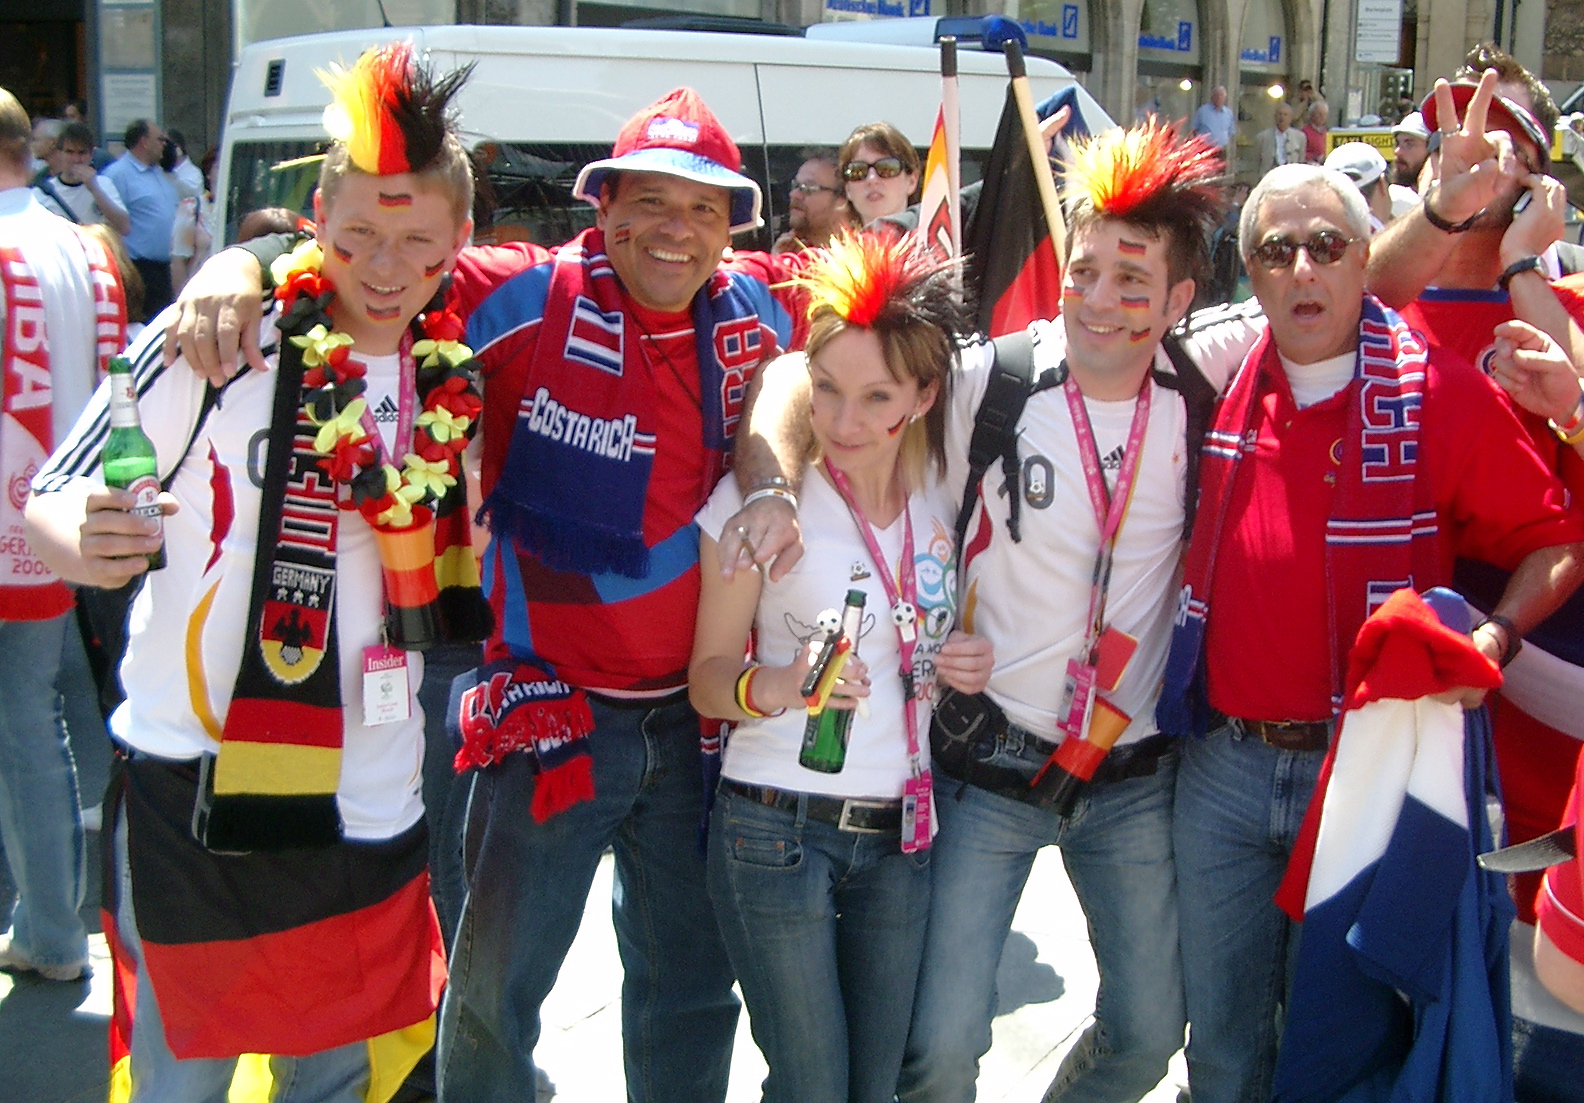 München, 9. Juni 2006. Costa Rica mag uns.